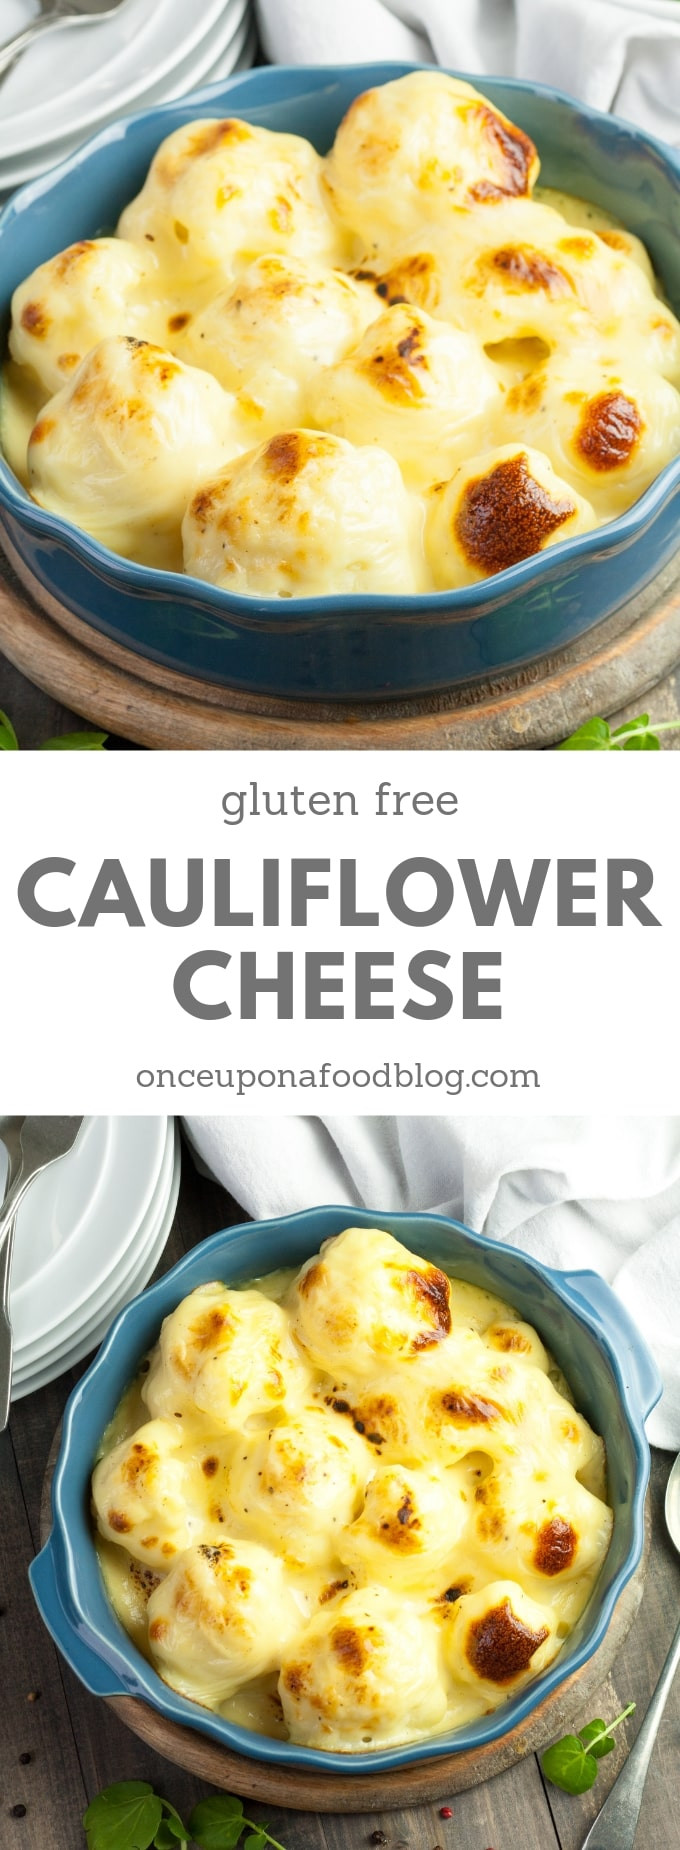 Gluten Free Cauliflower Recipes
 Gluten Free Cauliflower Cheese